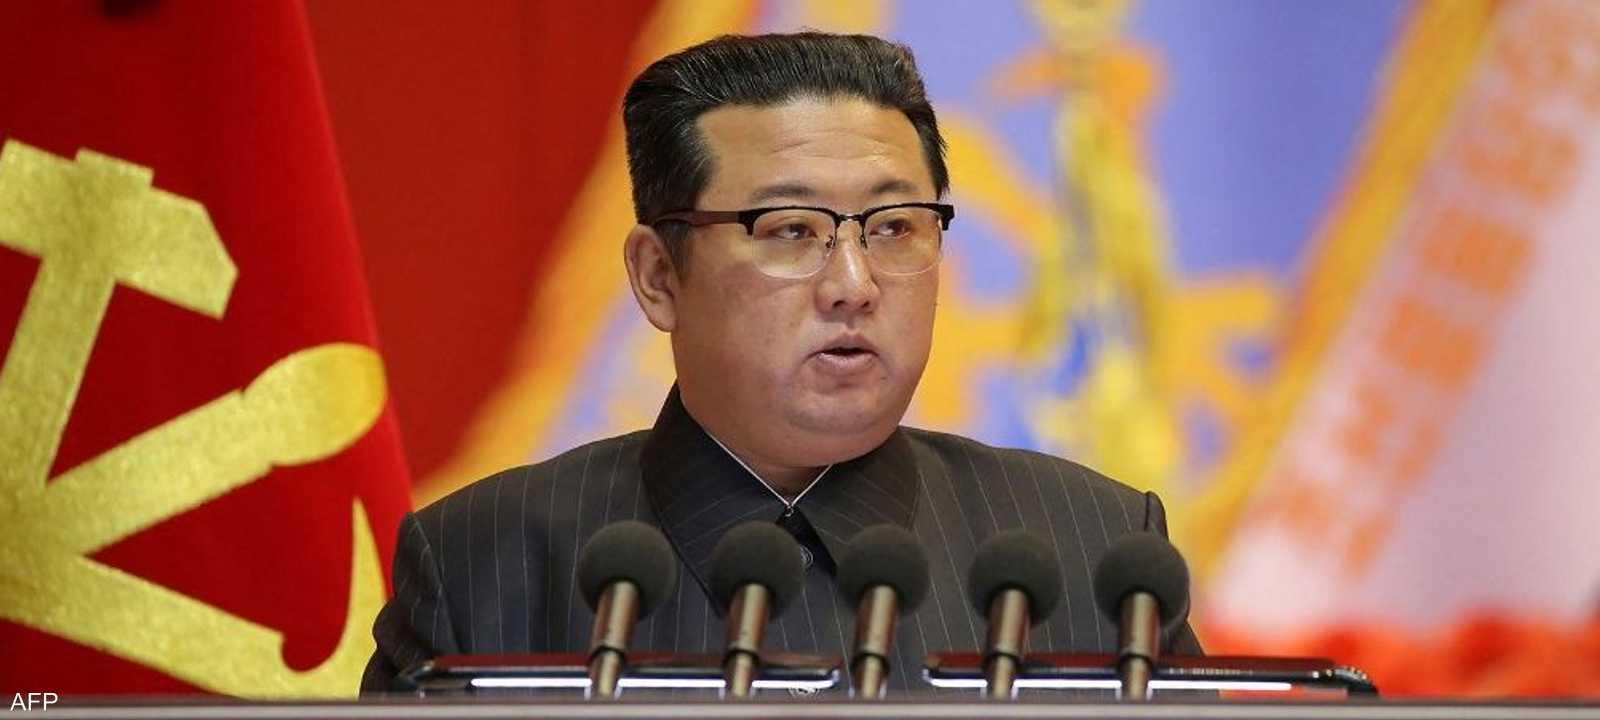 أرشيفية لزعيم كوريا الشمالية كيم جونغ أون